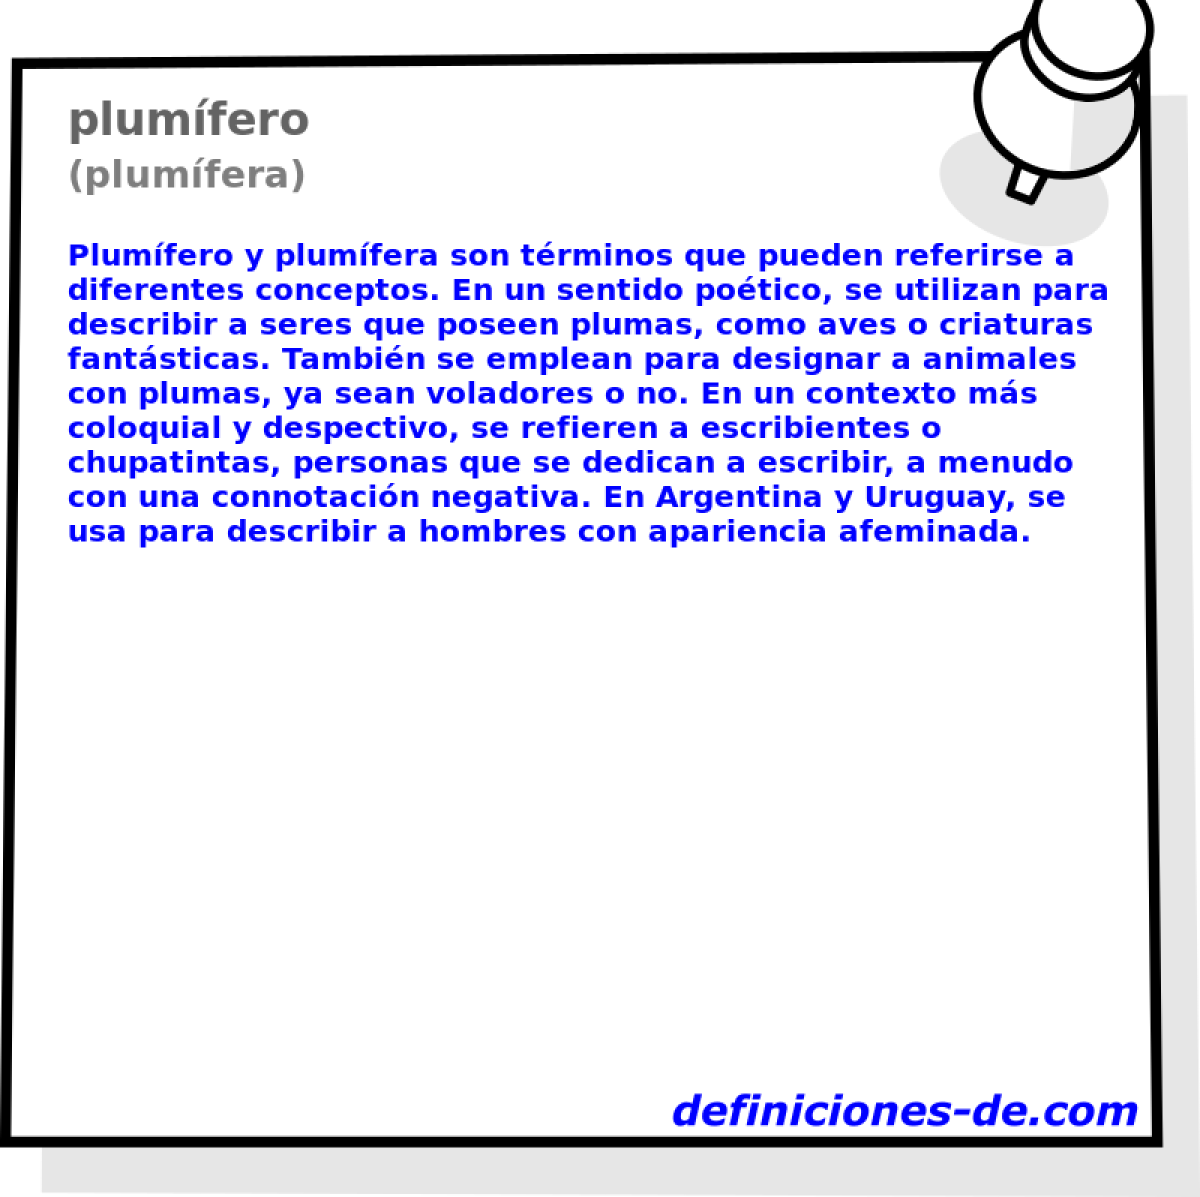 plumfero (plumfera)